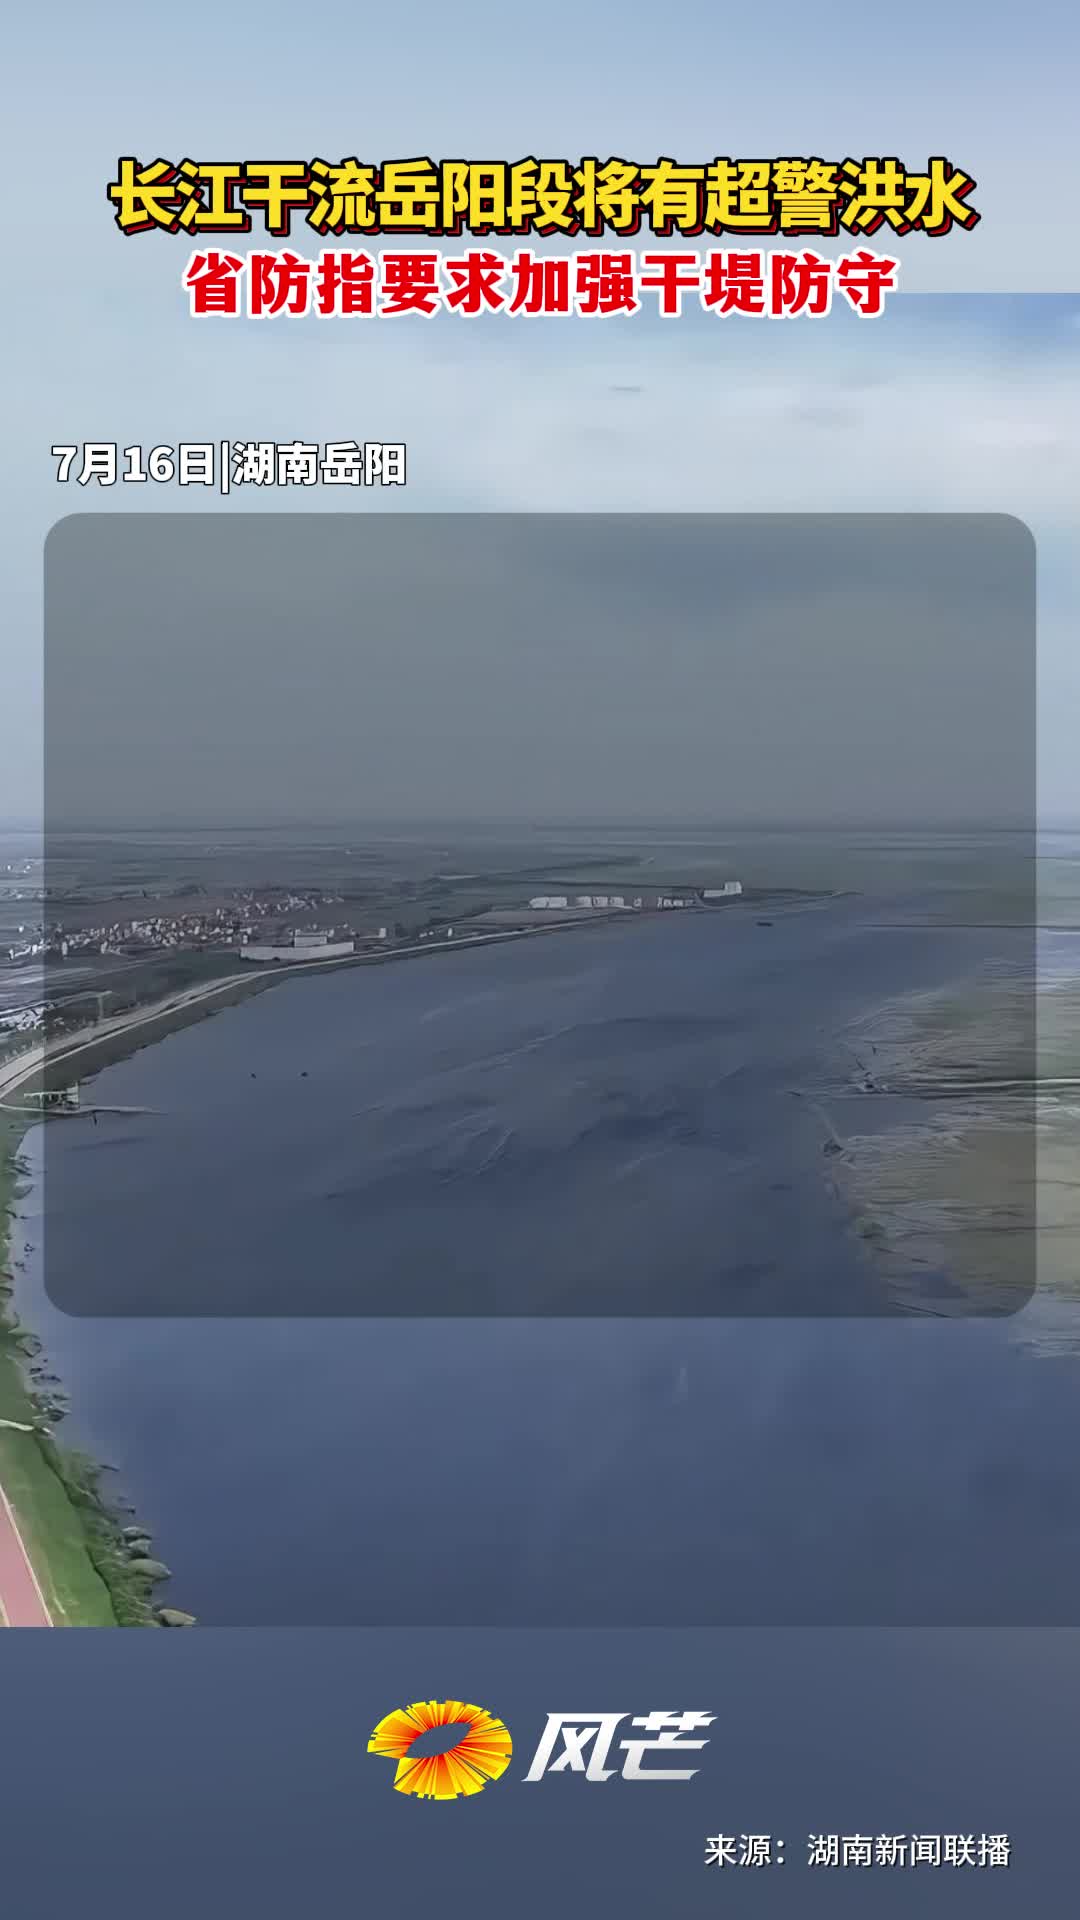 长江干流岳阳段将有超警洪水+省防指要求加强干堤防守